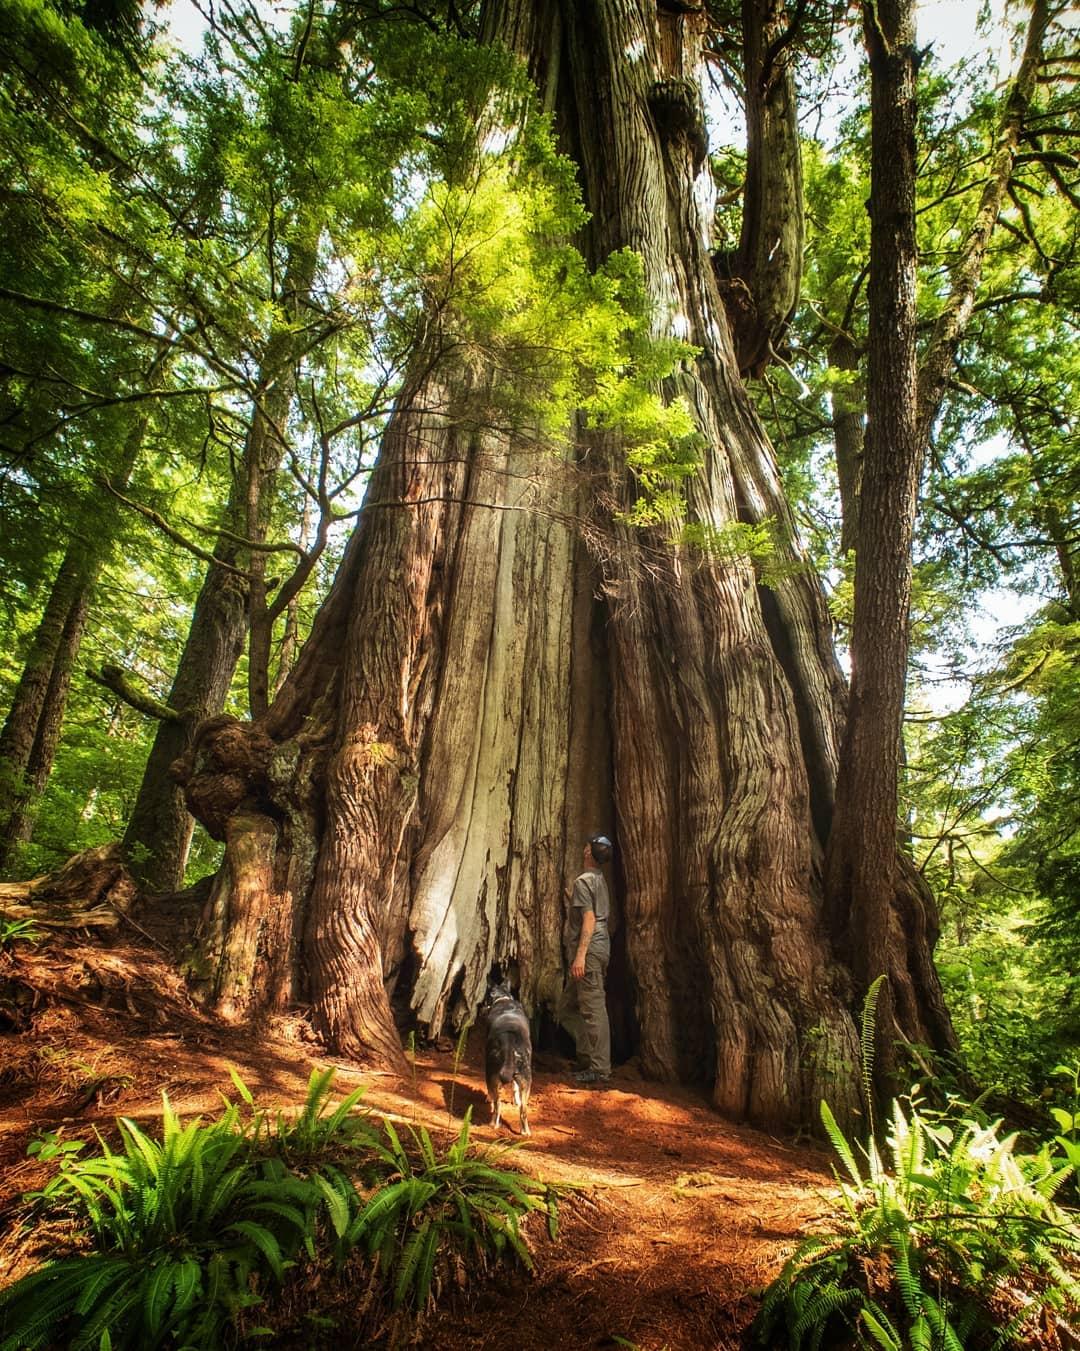 برای دیدن درختان عظیم الجثه به بریتیش کلمبیا بروید